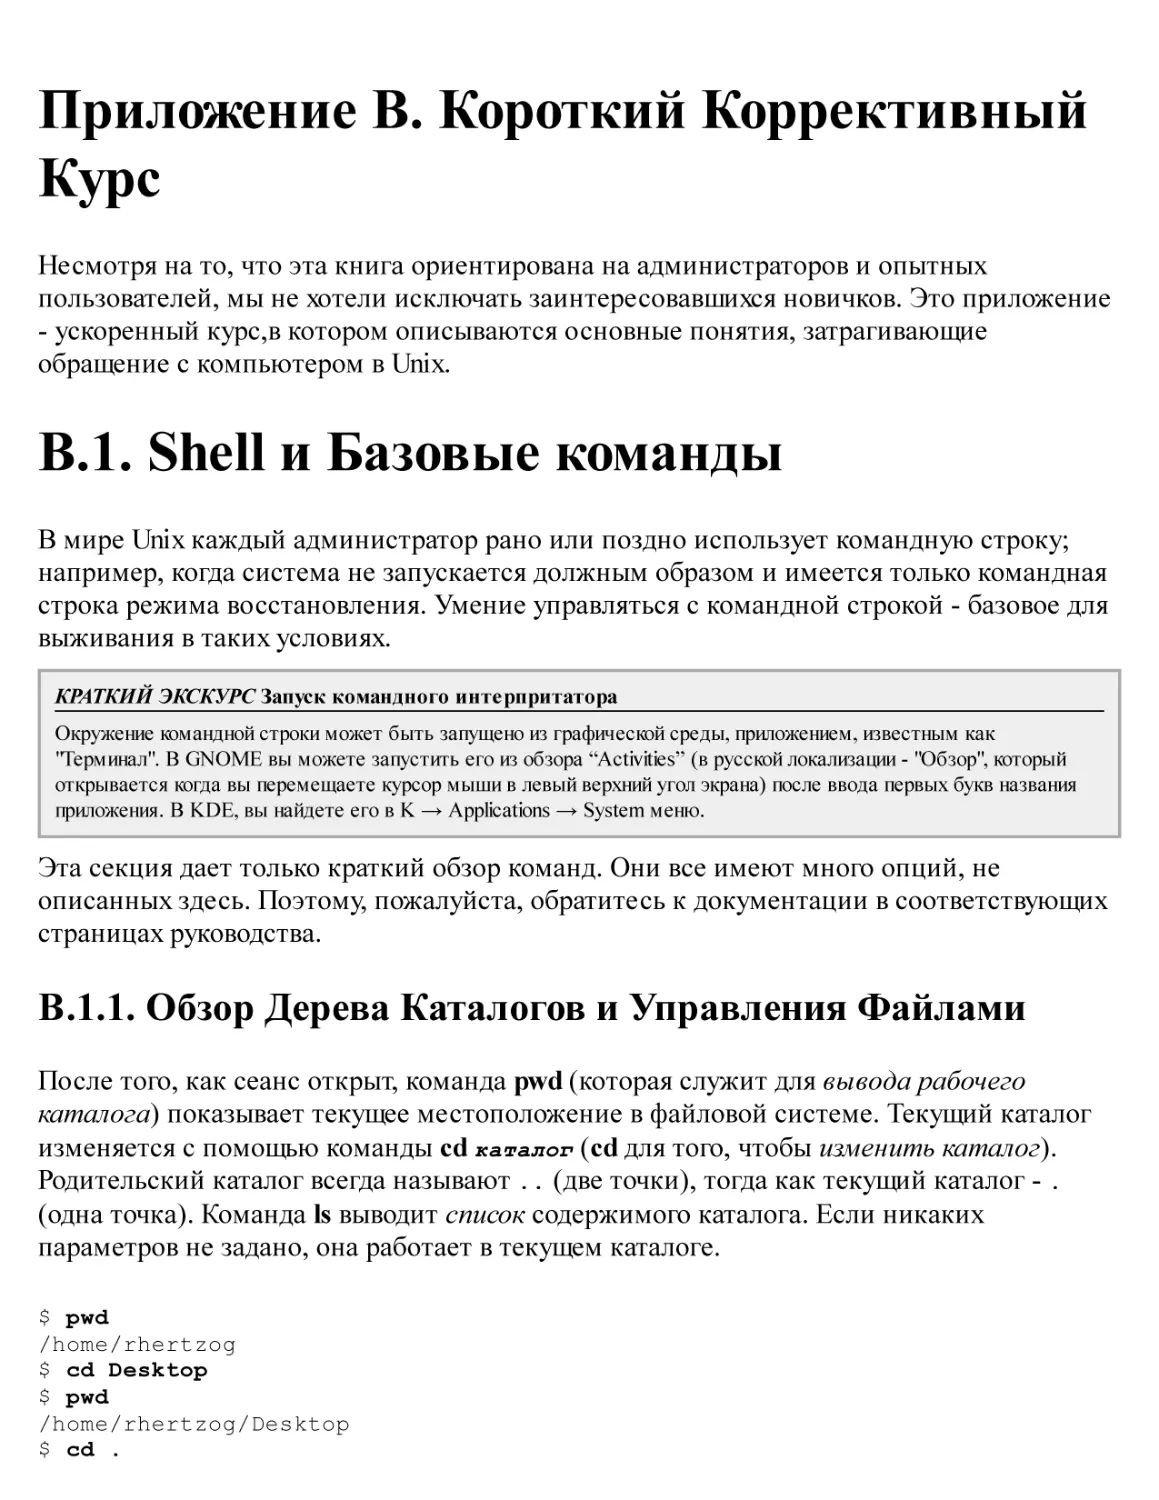 B. Короткий Коррективный Курс
B.1. Shell и Базовые команды
B.1.1. Обзор Дерева Каталогов и Управления Файлами